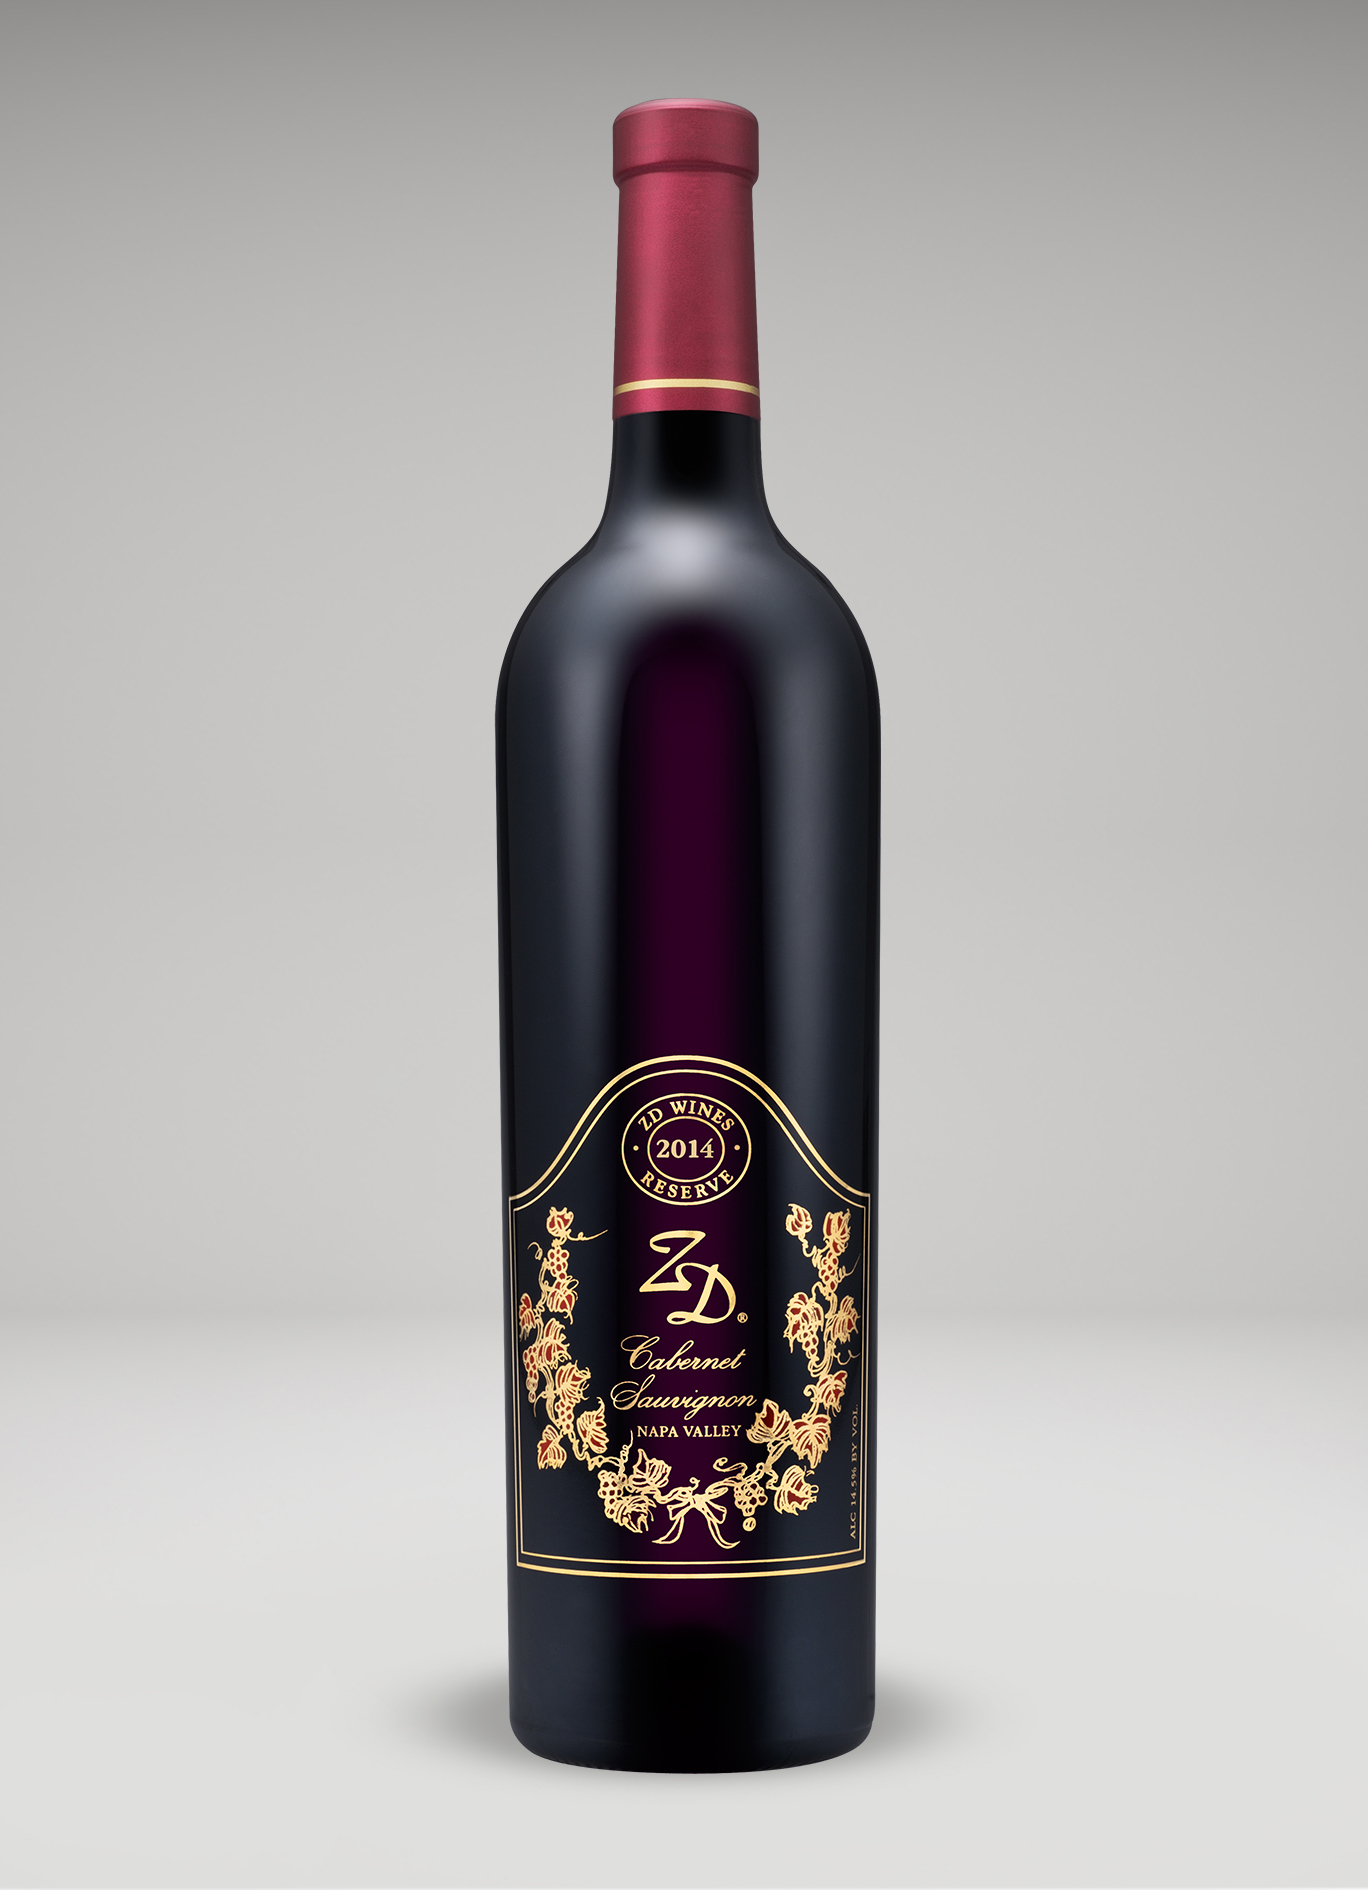 A bottle of 2014 ZD Reserve Cabernet Sauvignon